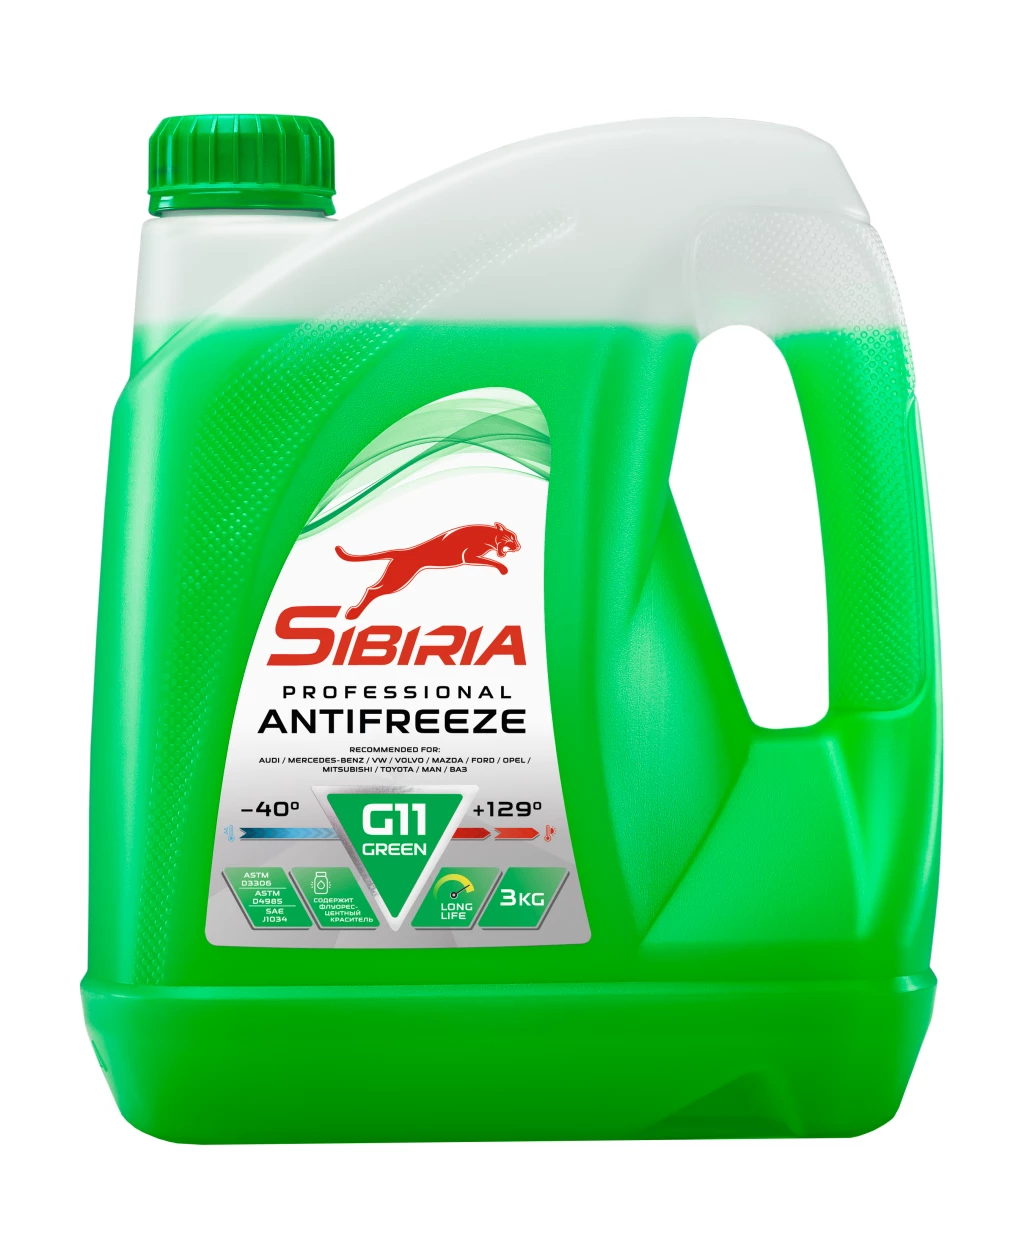 Антифриз Sibiria G11 зеленый -40°С 3 кг